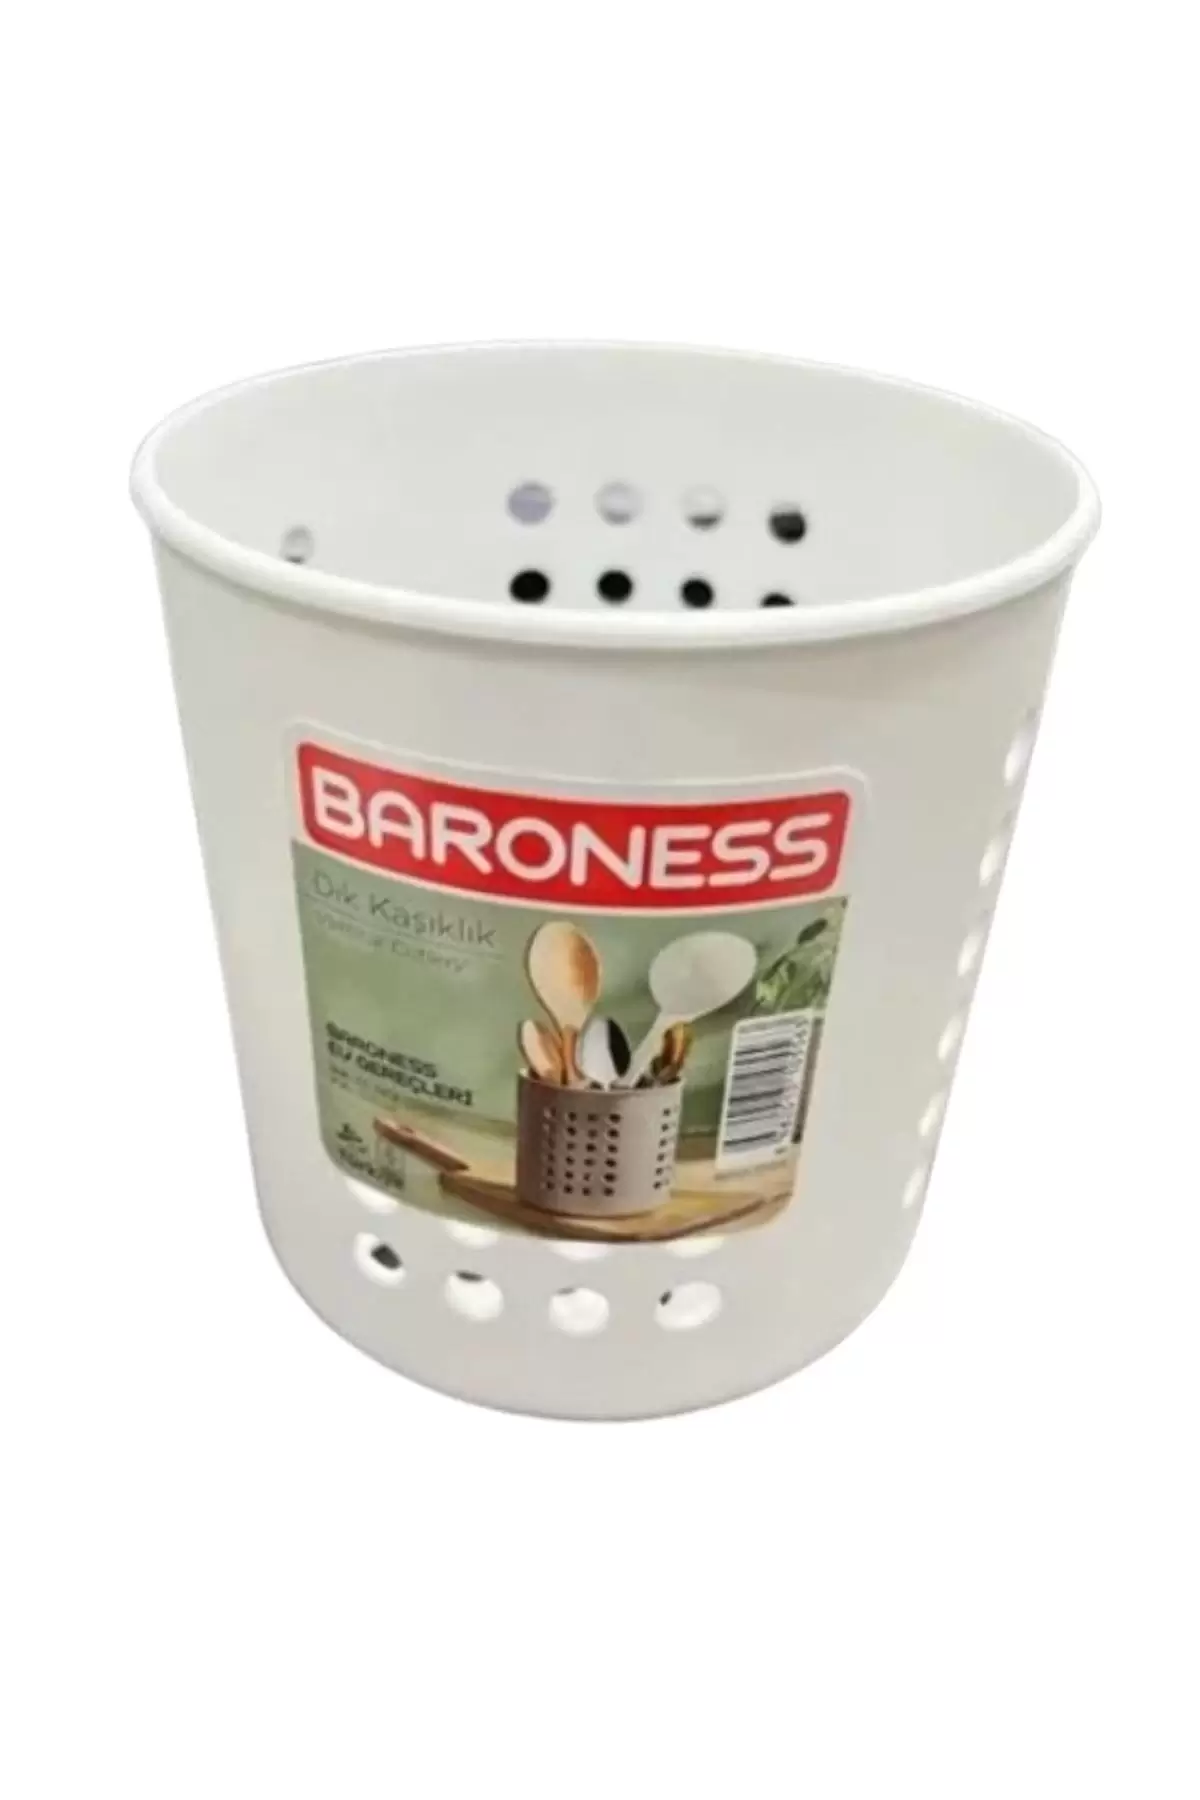 Baroness 10556 Plastik Dik Kaşıklık